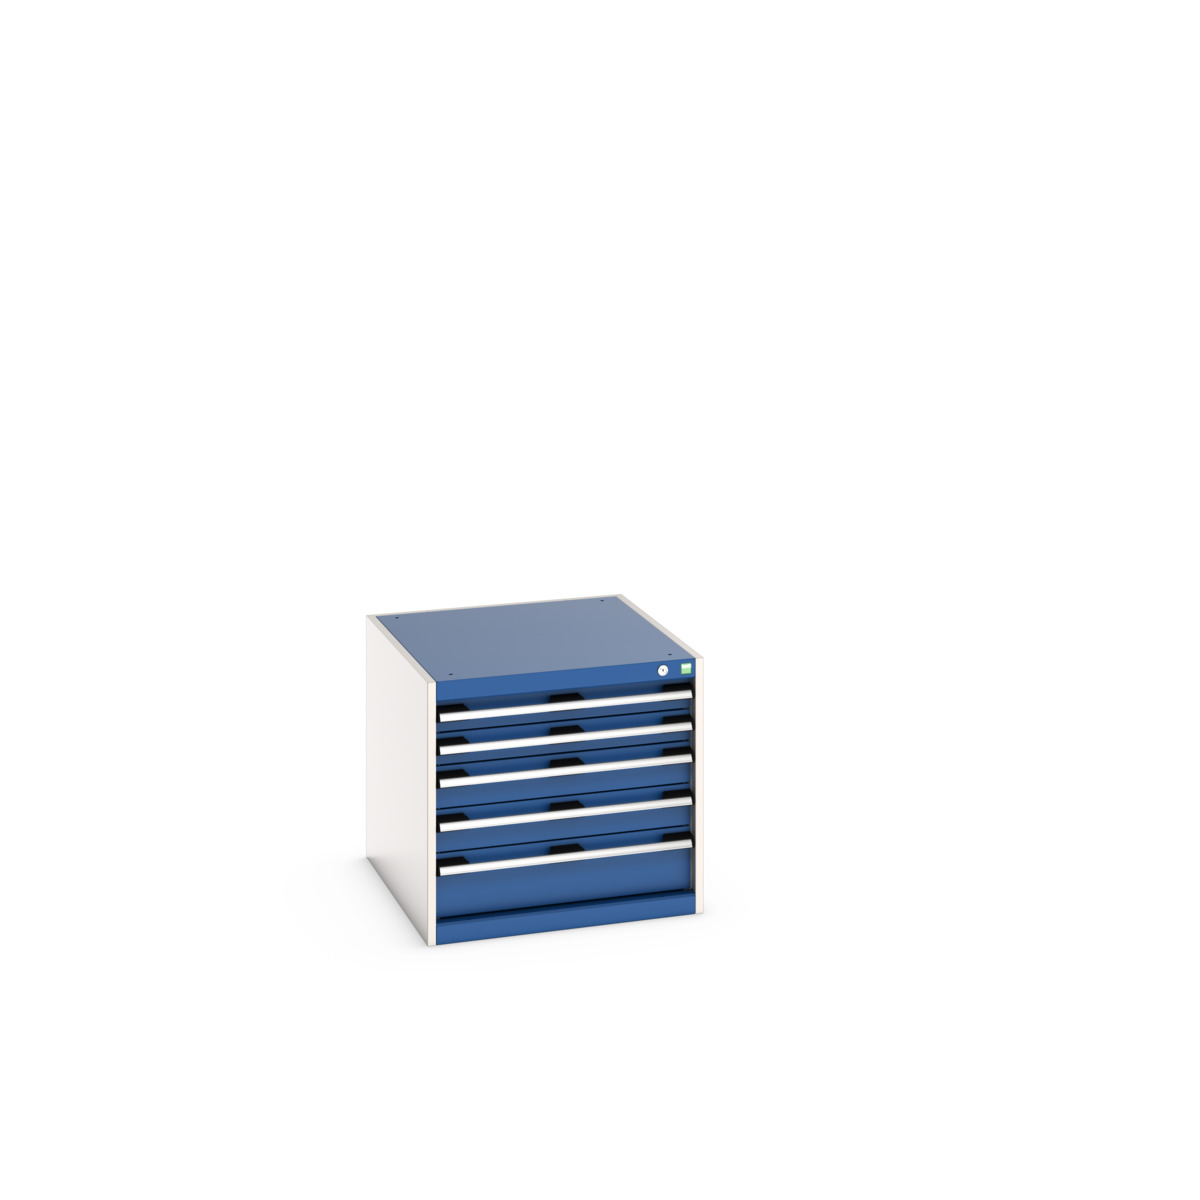 40027102.11V - cubio drawer cabinet